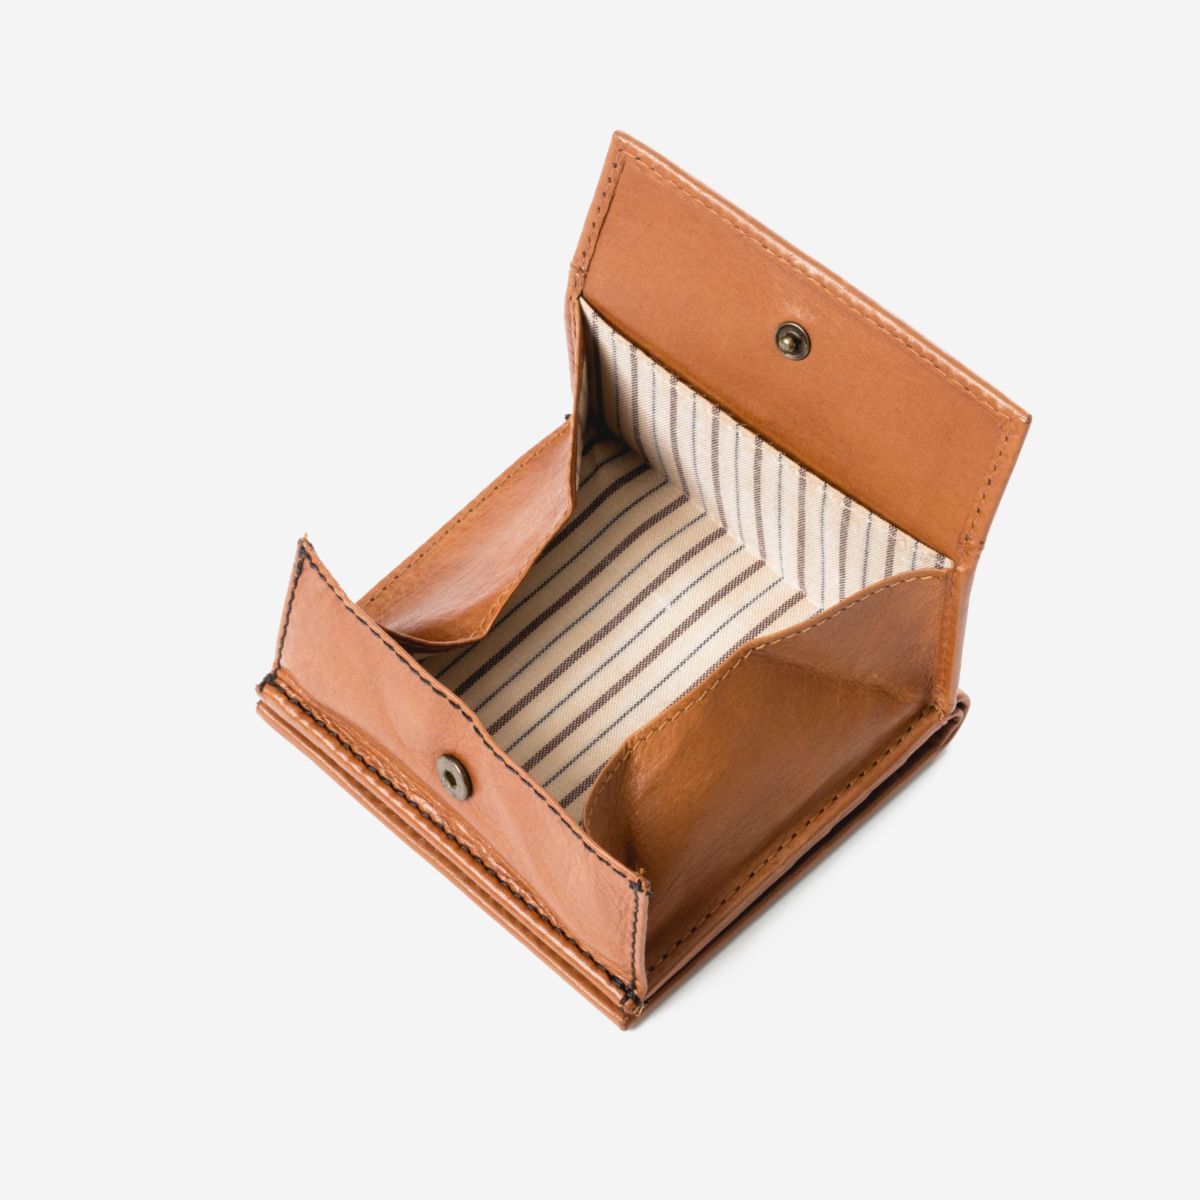 DuDu Small Unique Wallet  - Light Brown